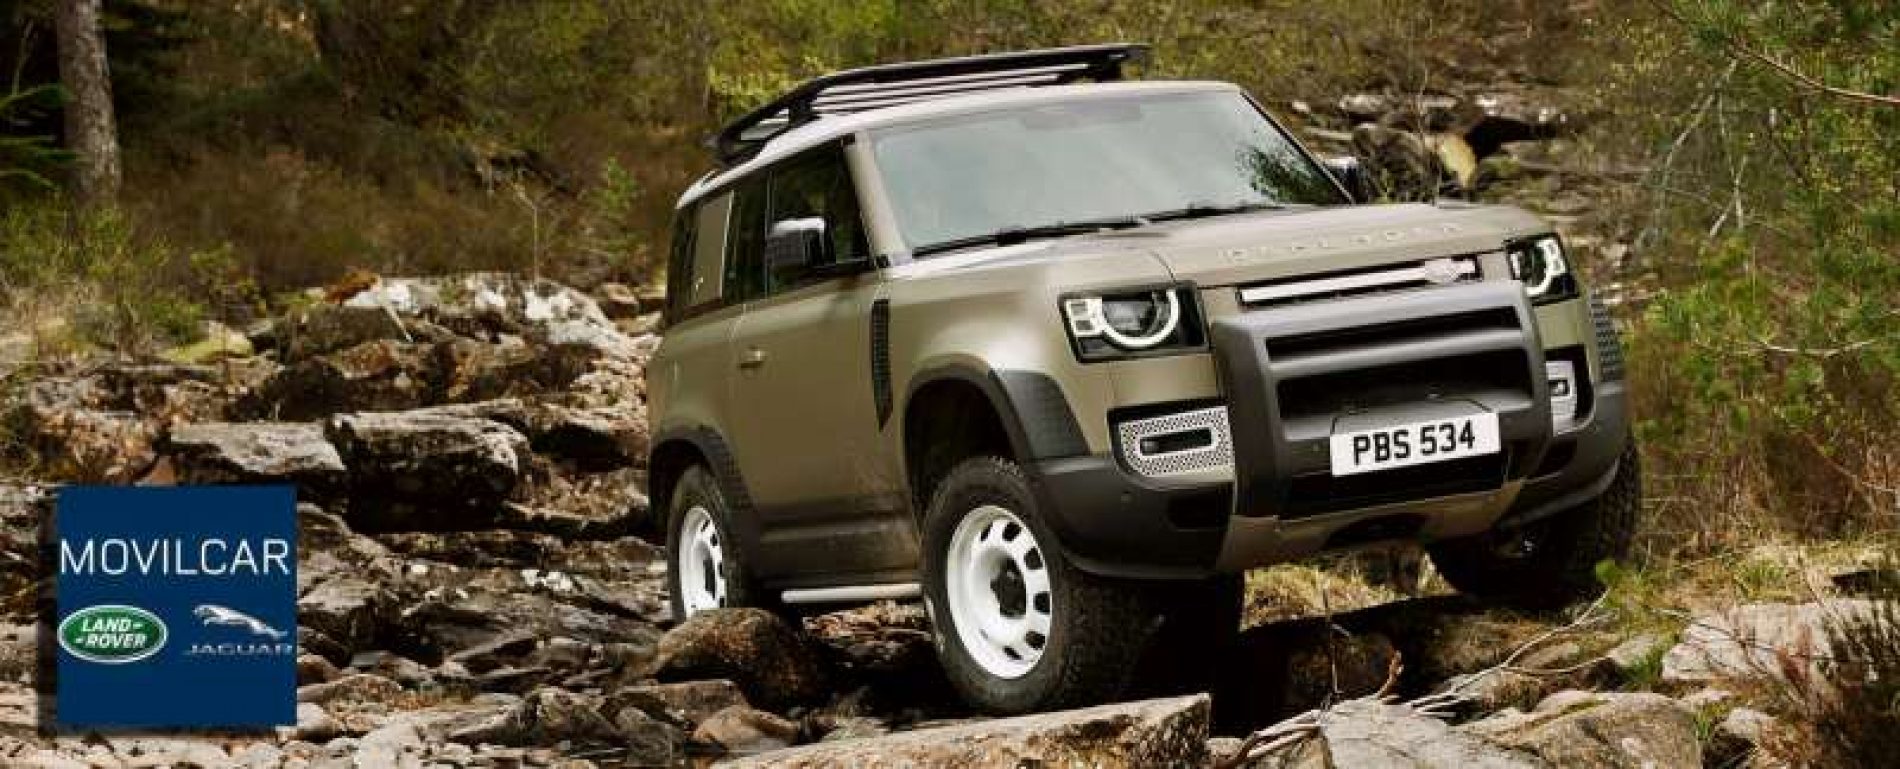 Movilcar presenta en primicia el nuevo Land Rover Defender en Cinegética 2020